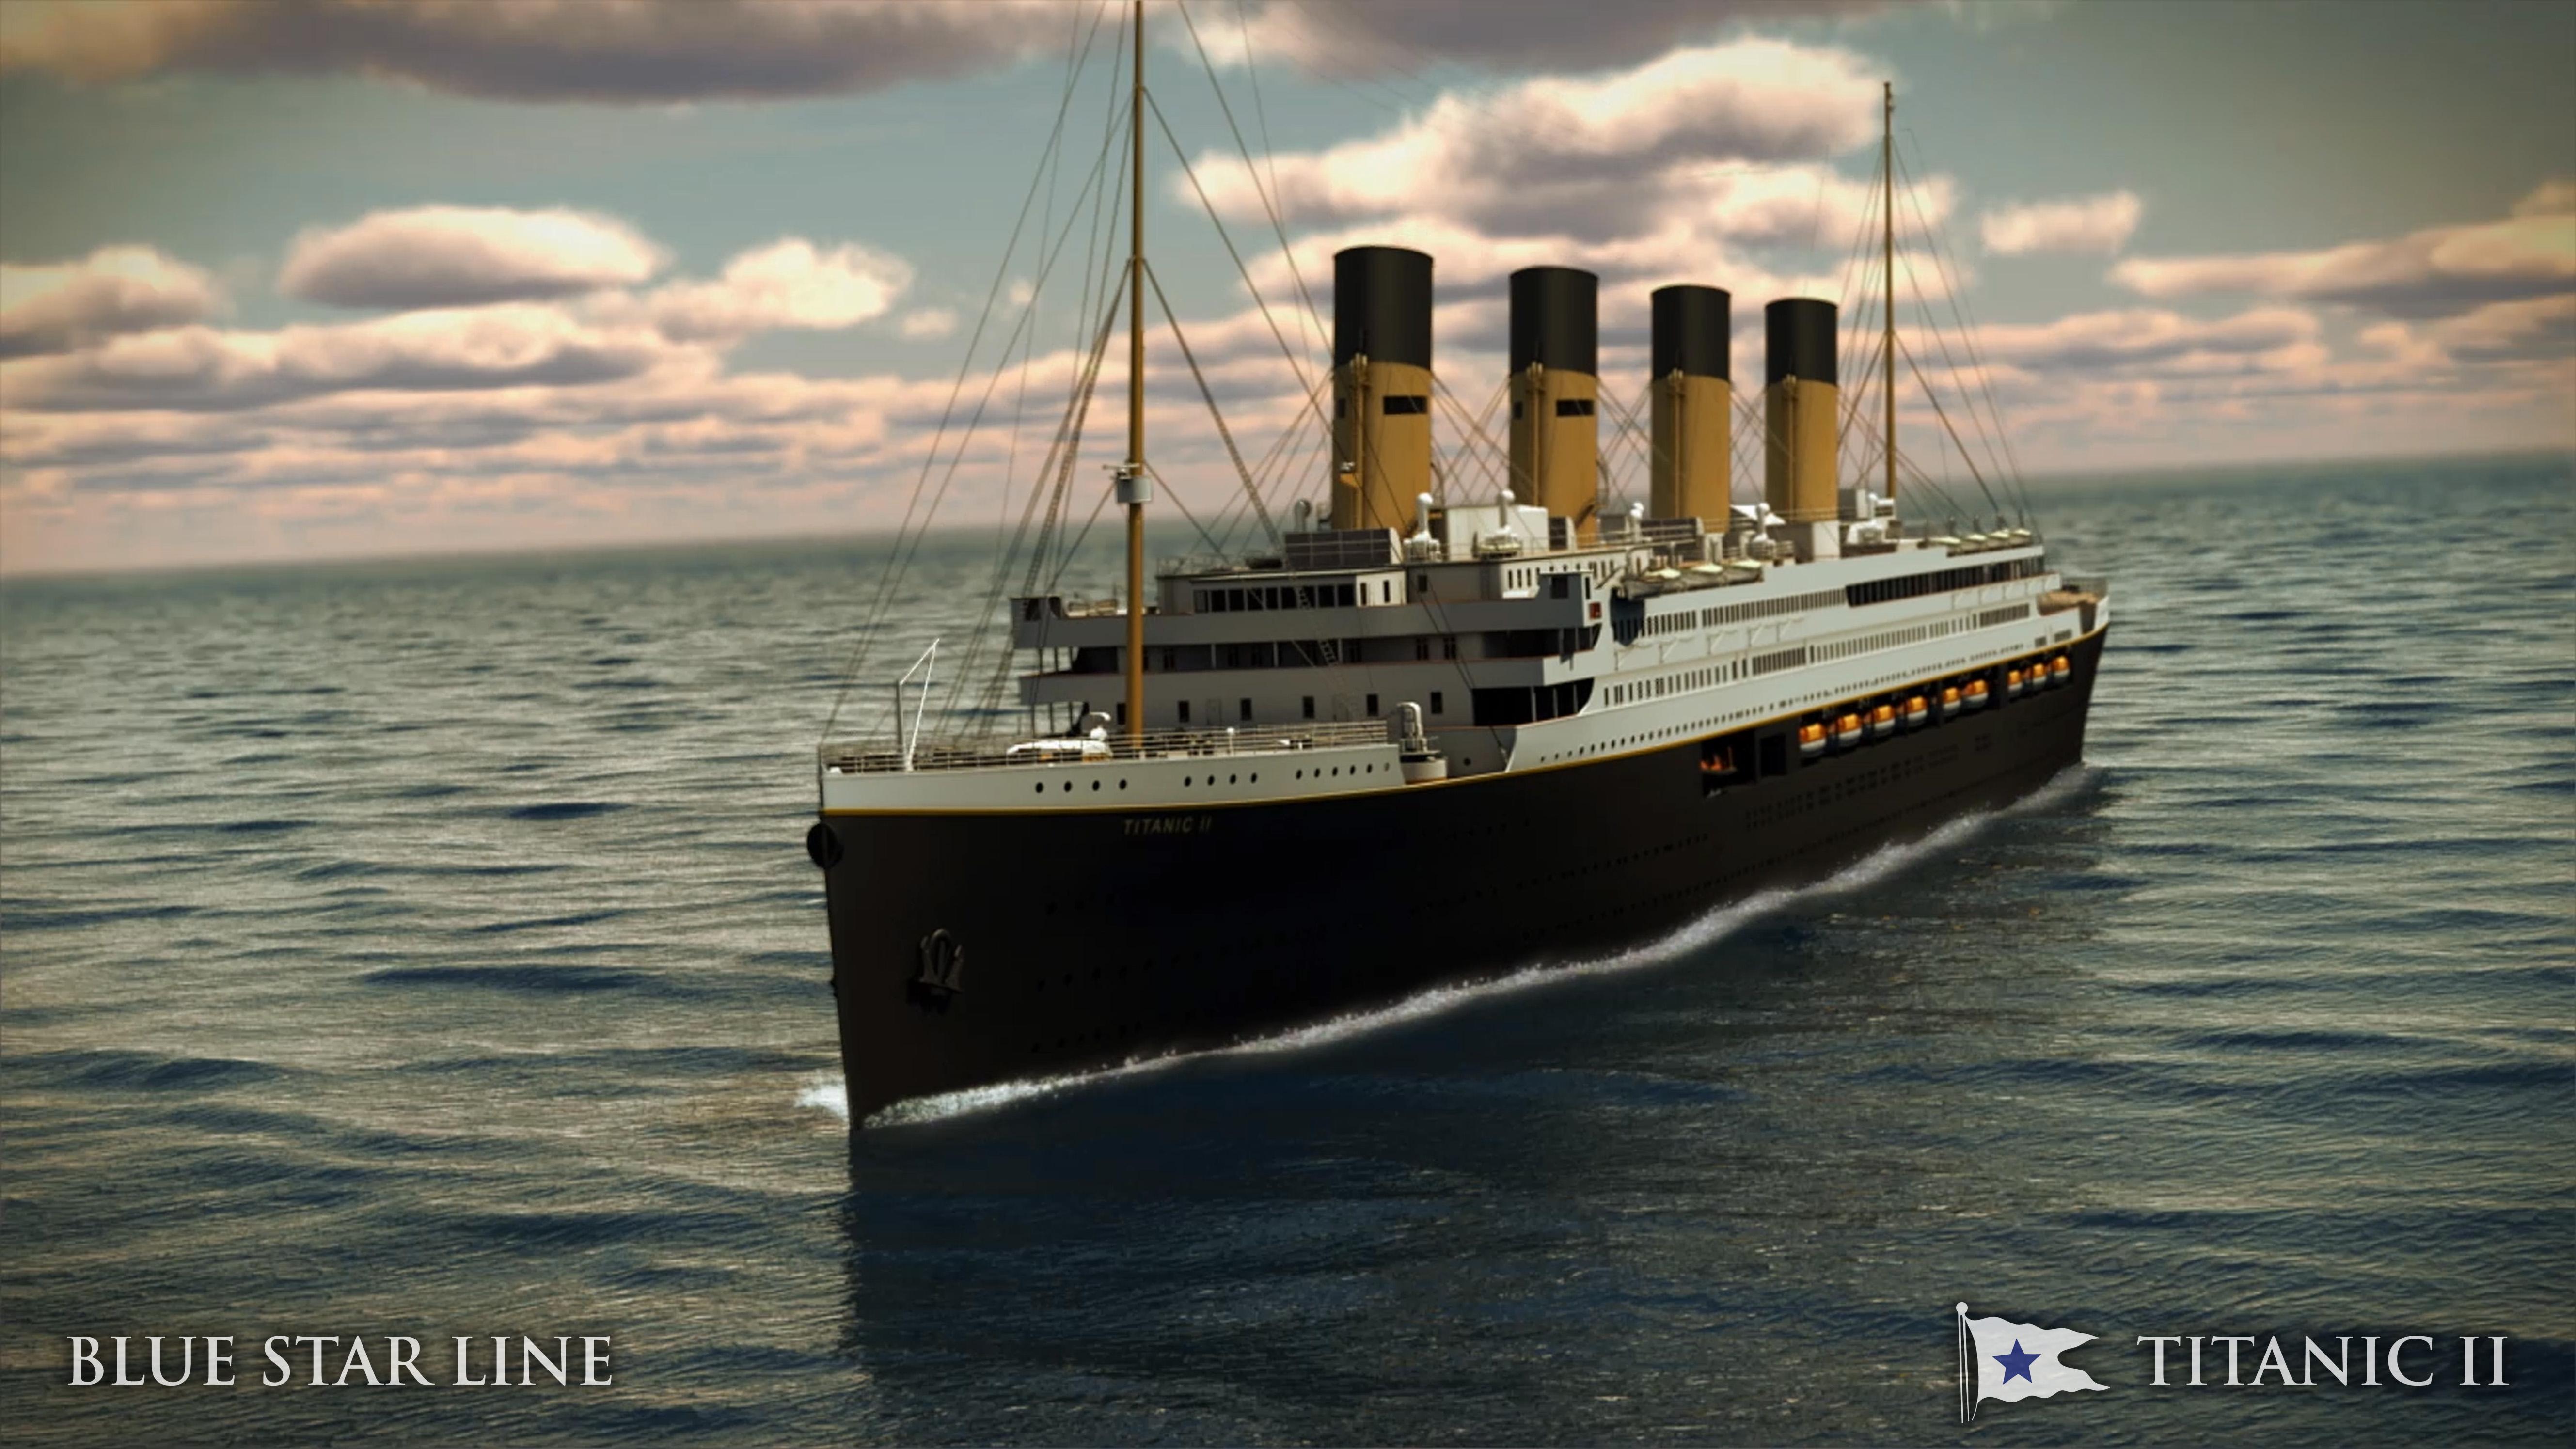 泰坦尼克号邮轮船桌面壁纸高清大图预览1920x1080_影视壁纸下载_墨鱼部落格